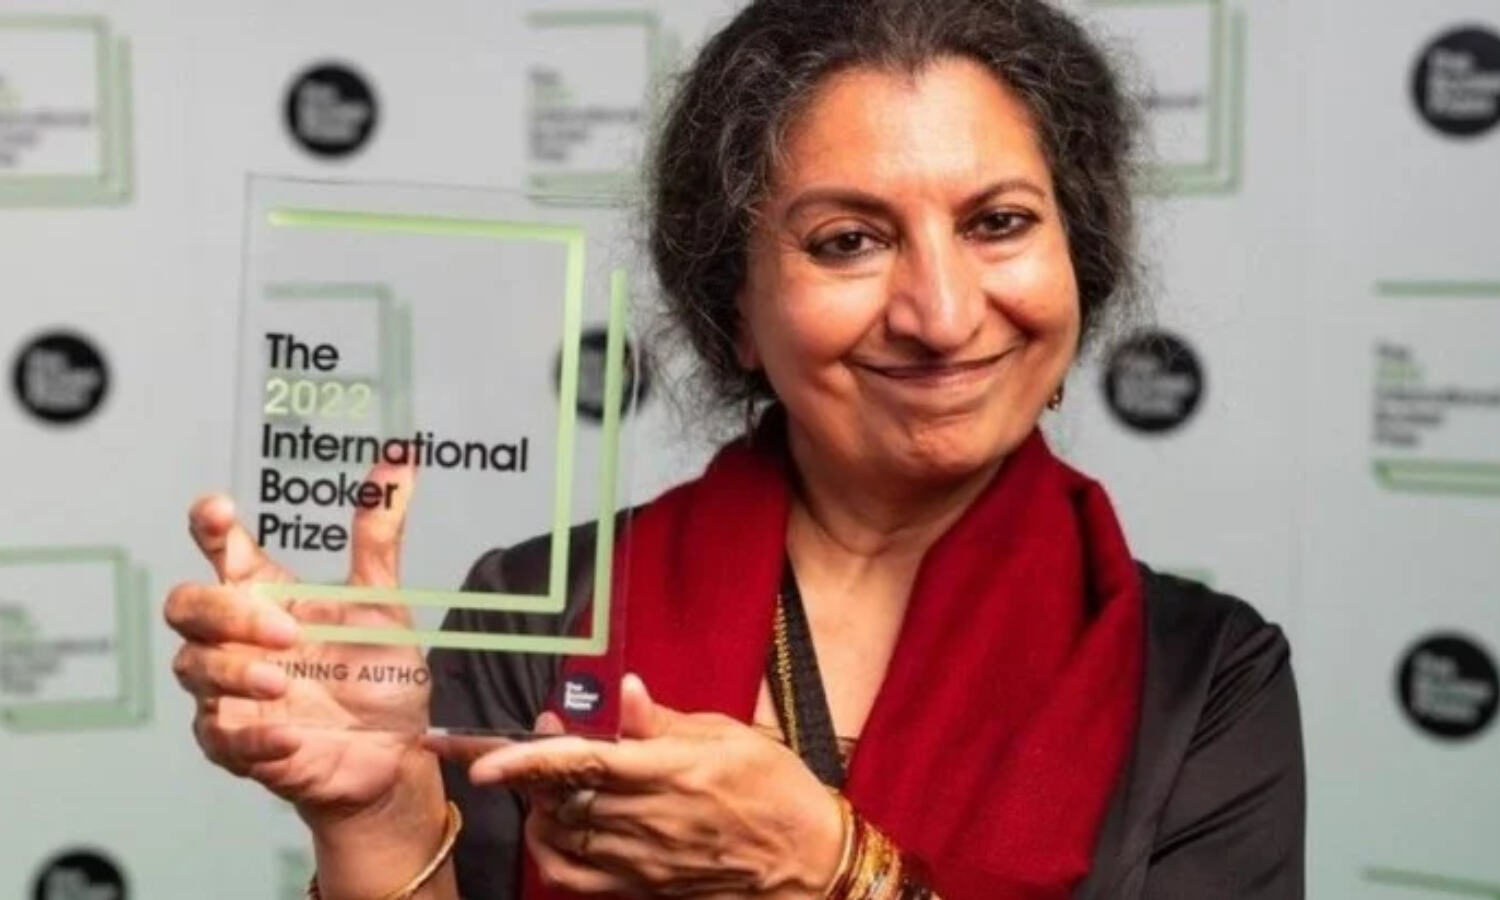 Booker Prize विजेता गीतांजलि श्री पर शिव-पार्वती का अपमान करने का आरोप, विवाद के कारण सम्मान कार्यक्रम रद्दलेखिका गीजांजलि श्री से पहले और कौन से भारतीय जीत चुके हैं बुकर